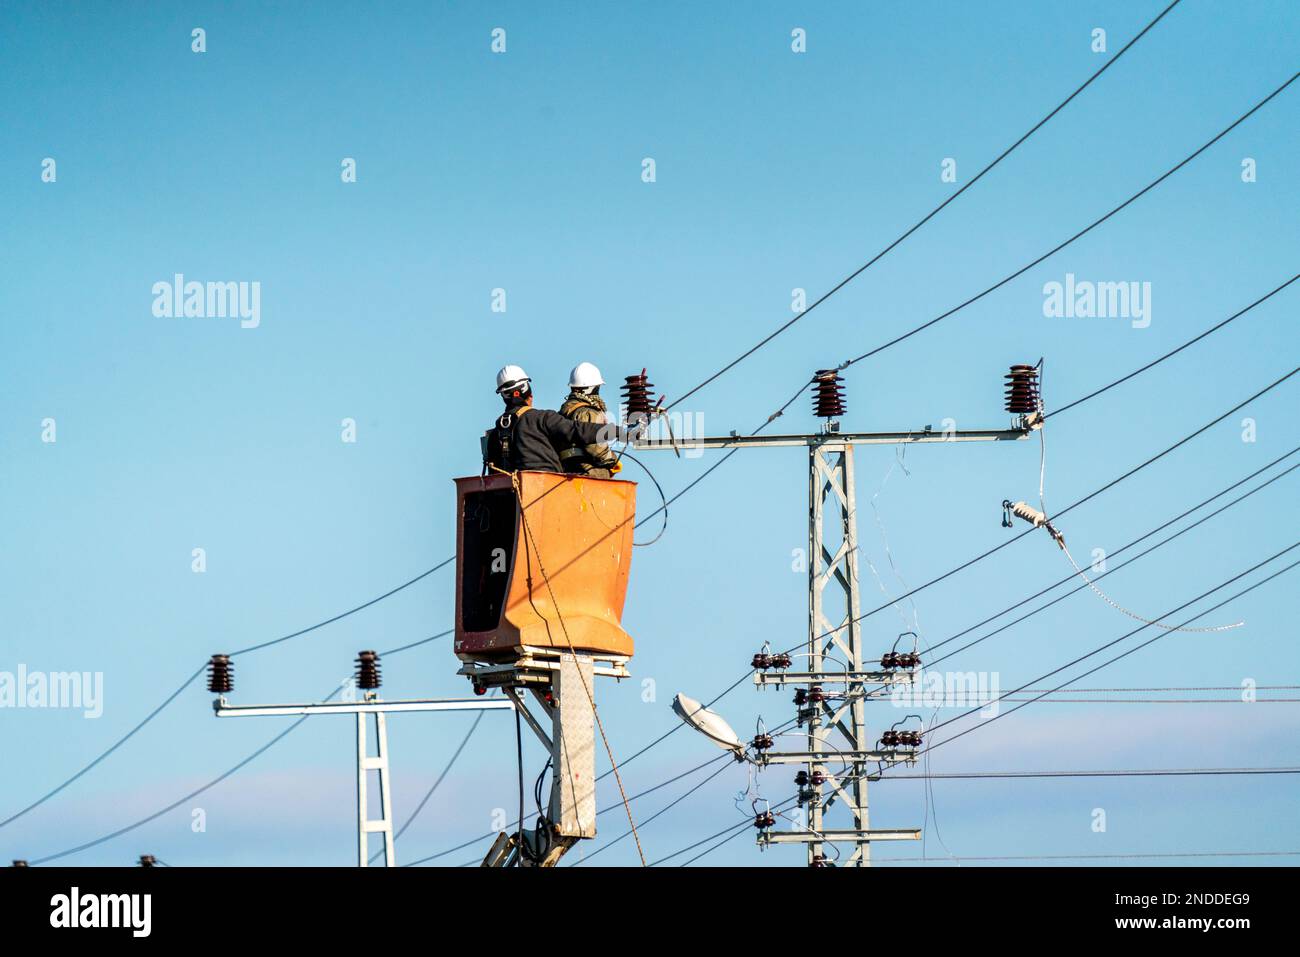 Cables y conexiones telefonía fija · Electricidad · El Corte